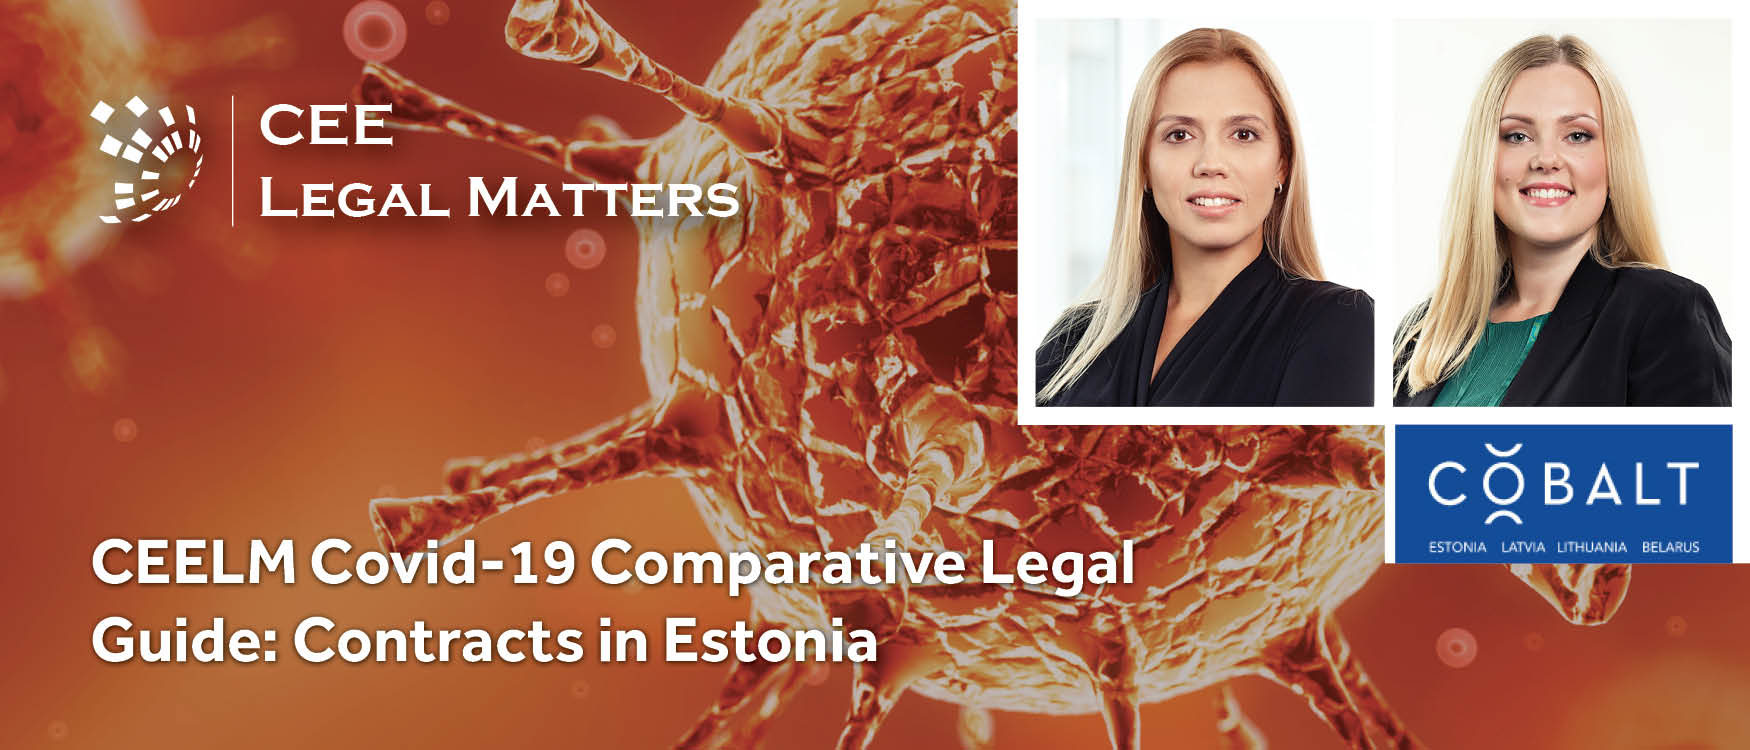 CEELM Covid-19 Comparative Legal Guide: Contracts in Estonia